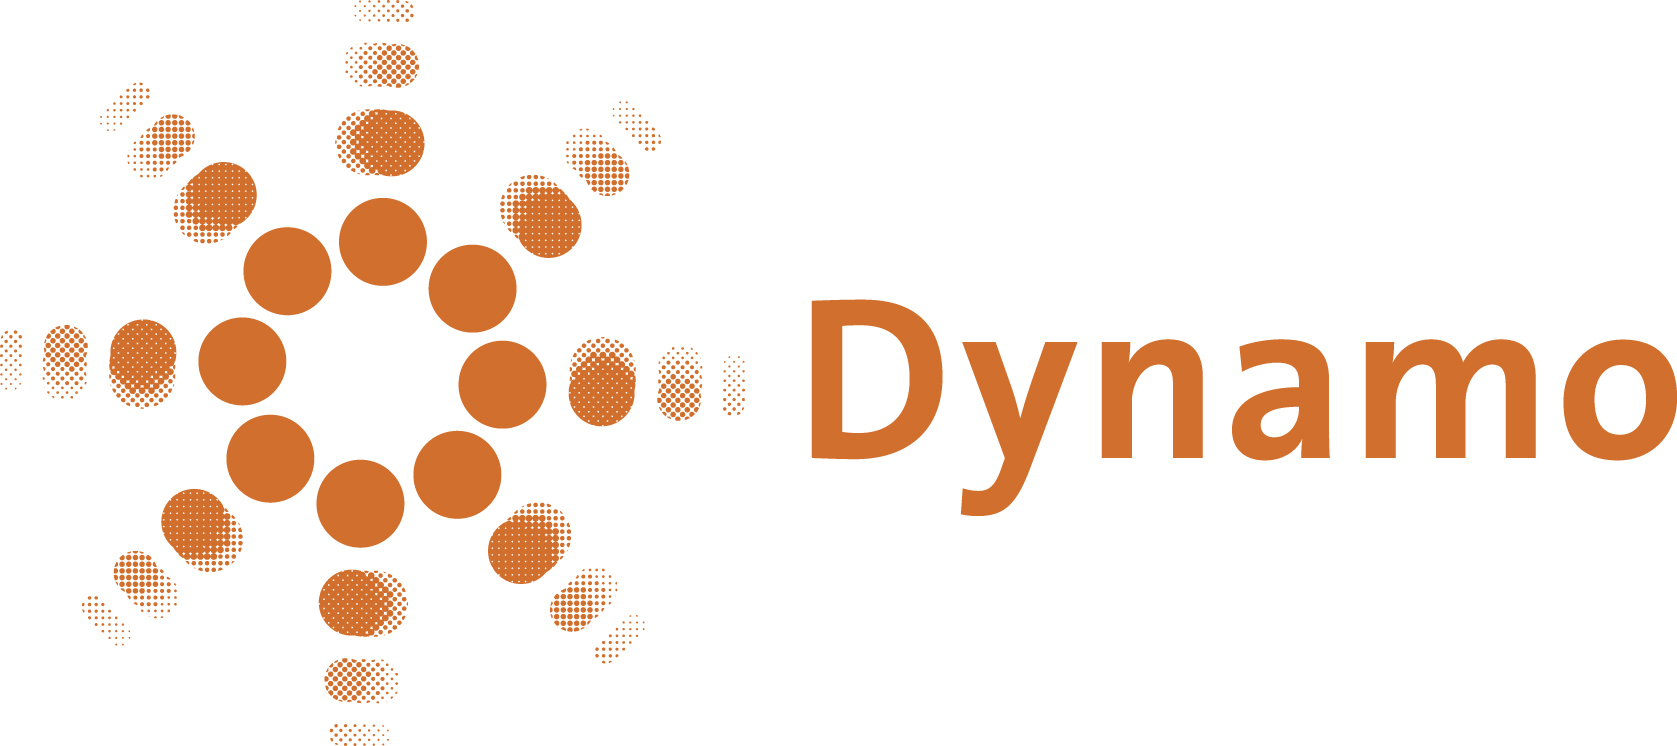 Logo Dynamo pms158